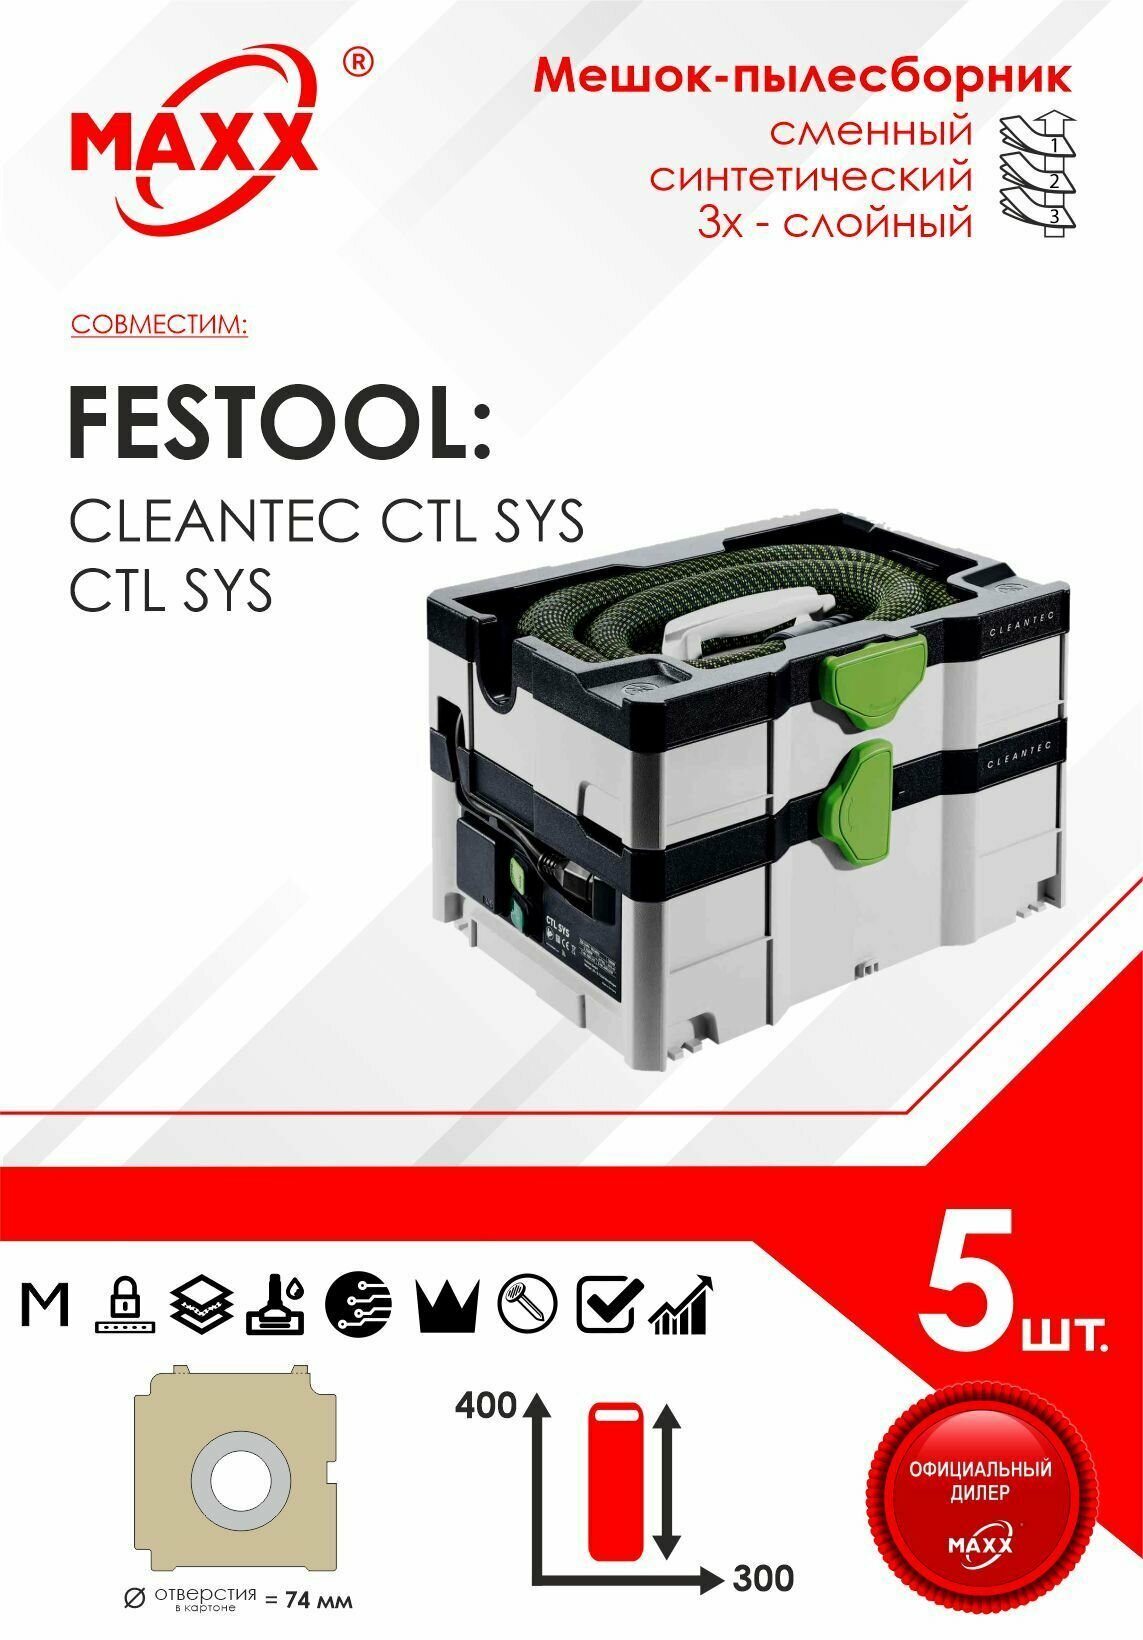 Мешок - пылесборник 5 шт. для пылесоса Festool CTL SYS, Festool CLEANTEC CTL SYS 575279